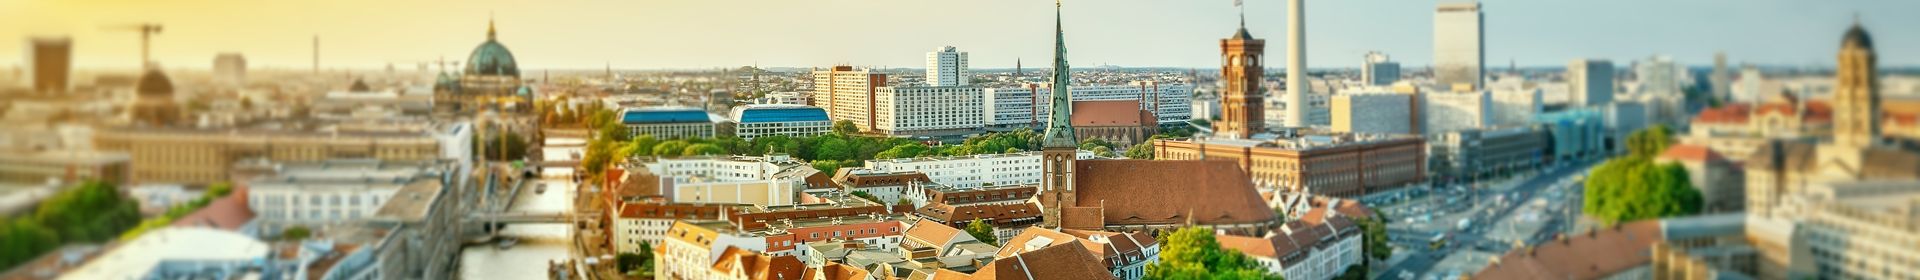 Wertermittlung / Immobilienberatung für Eigentumswohnungen und Teileigentum in Berlin, Potsdam & Brandenburg